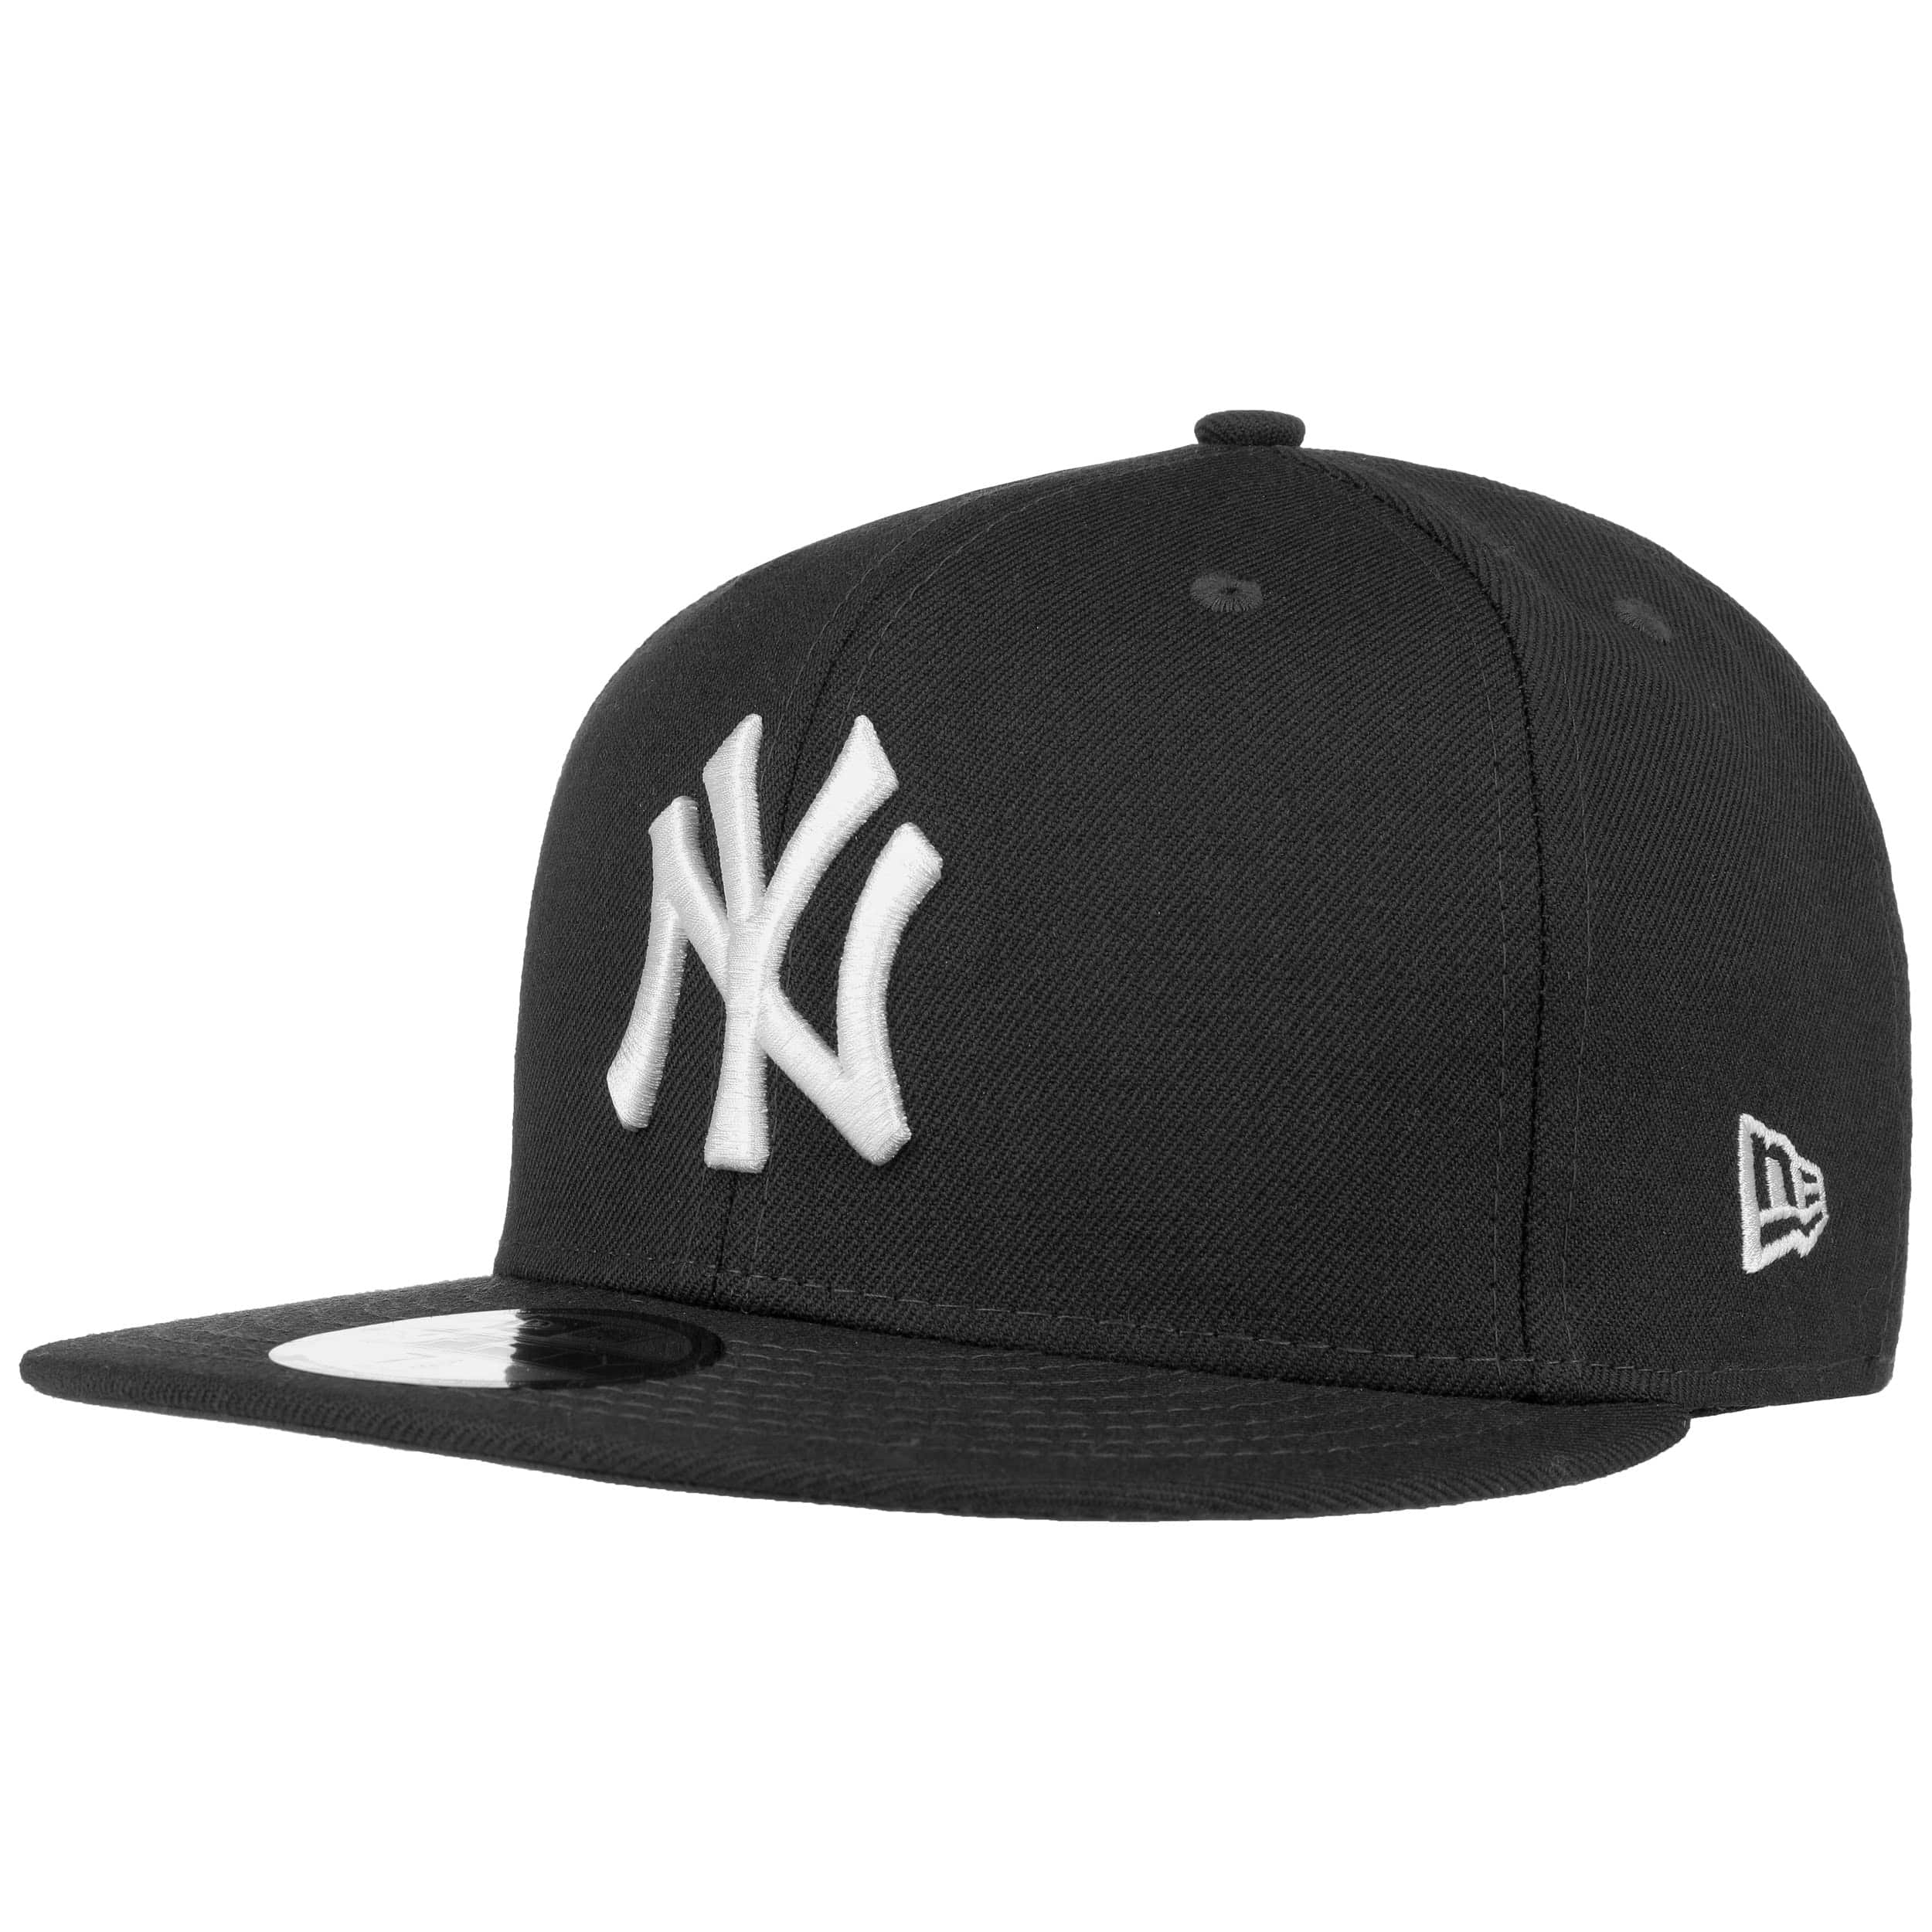 59Fifty MLB Basic NY Cap by New Era 